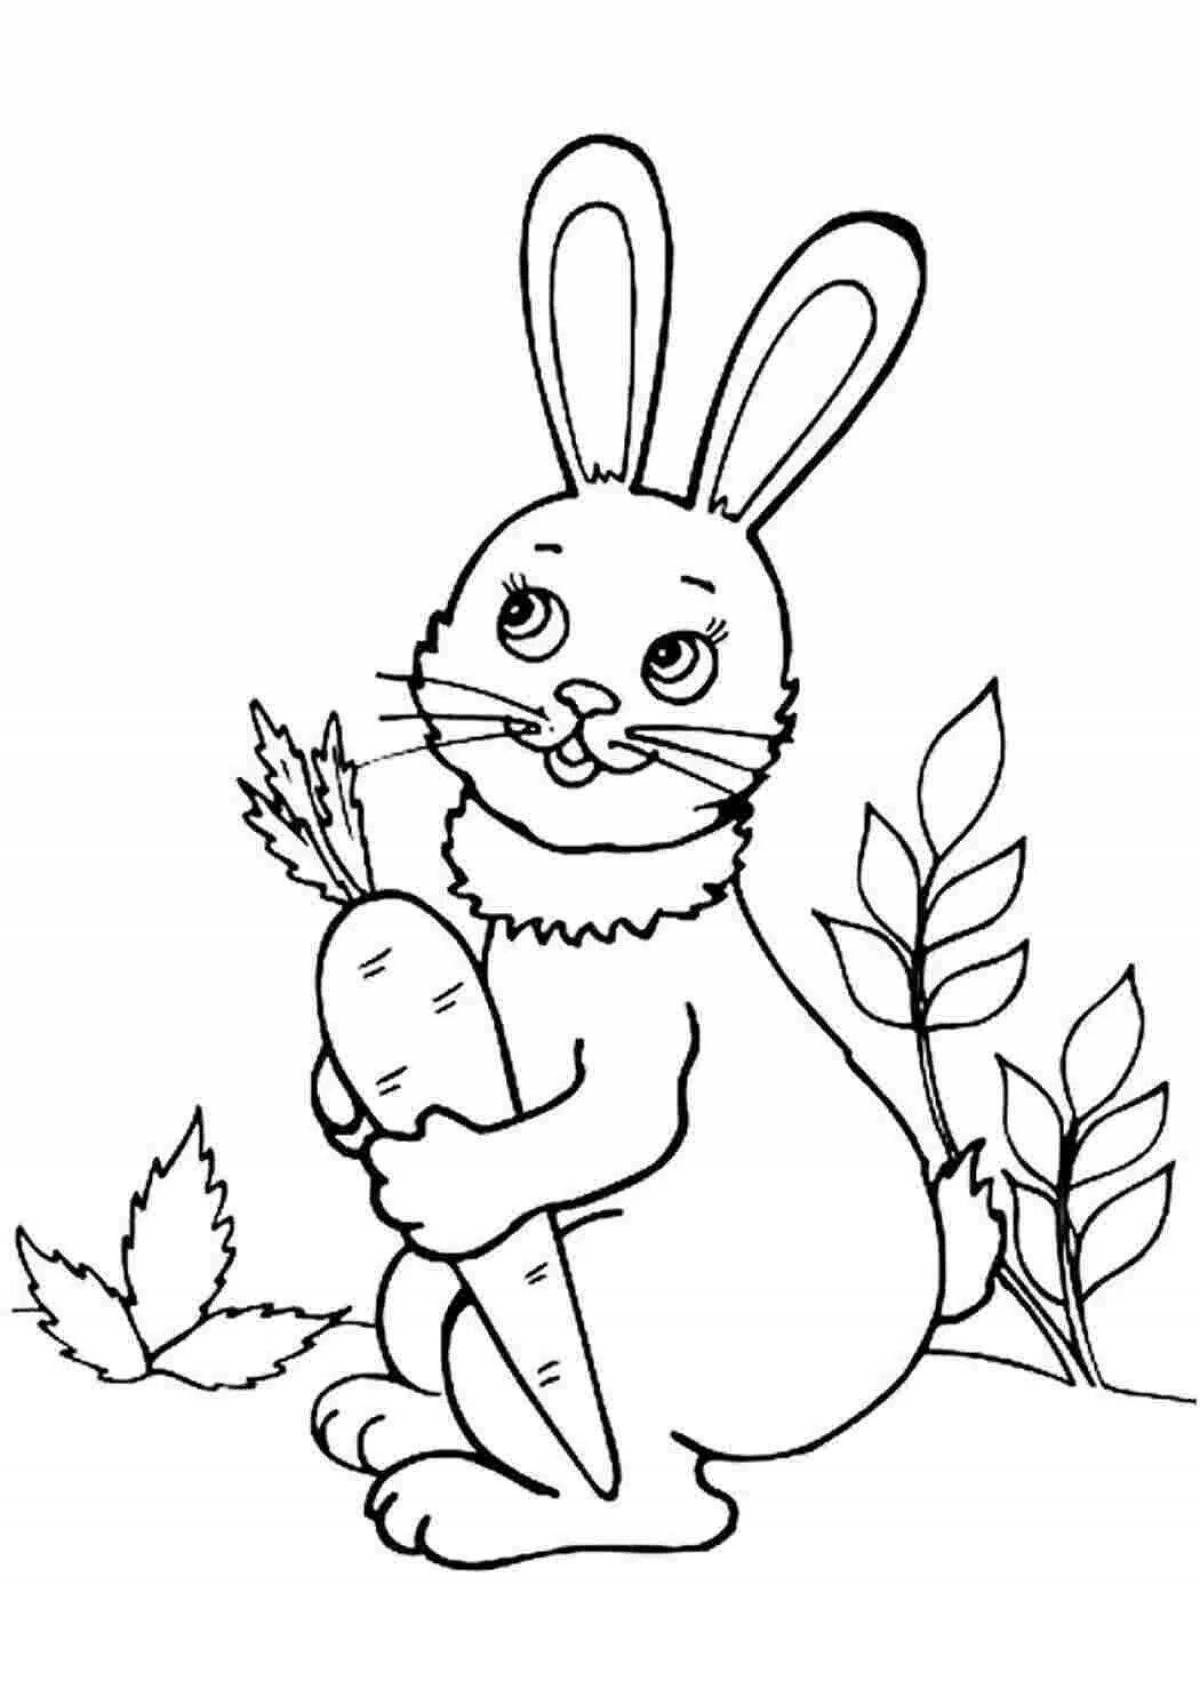 Анимированный рисунок кролика для детей